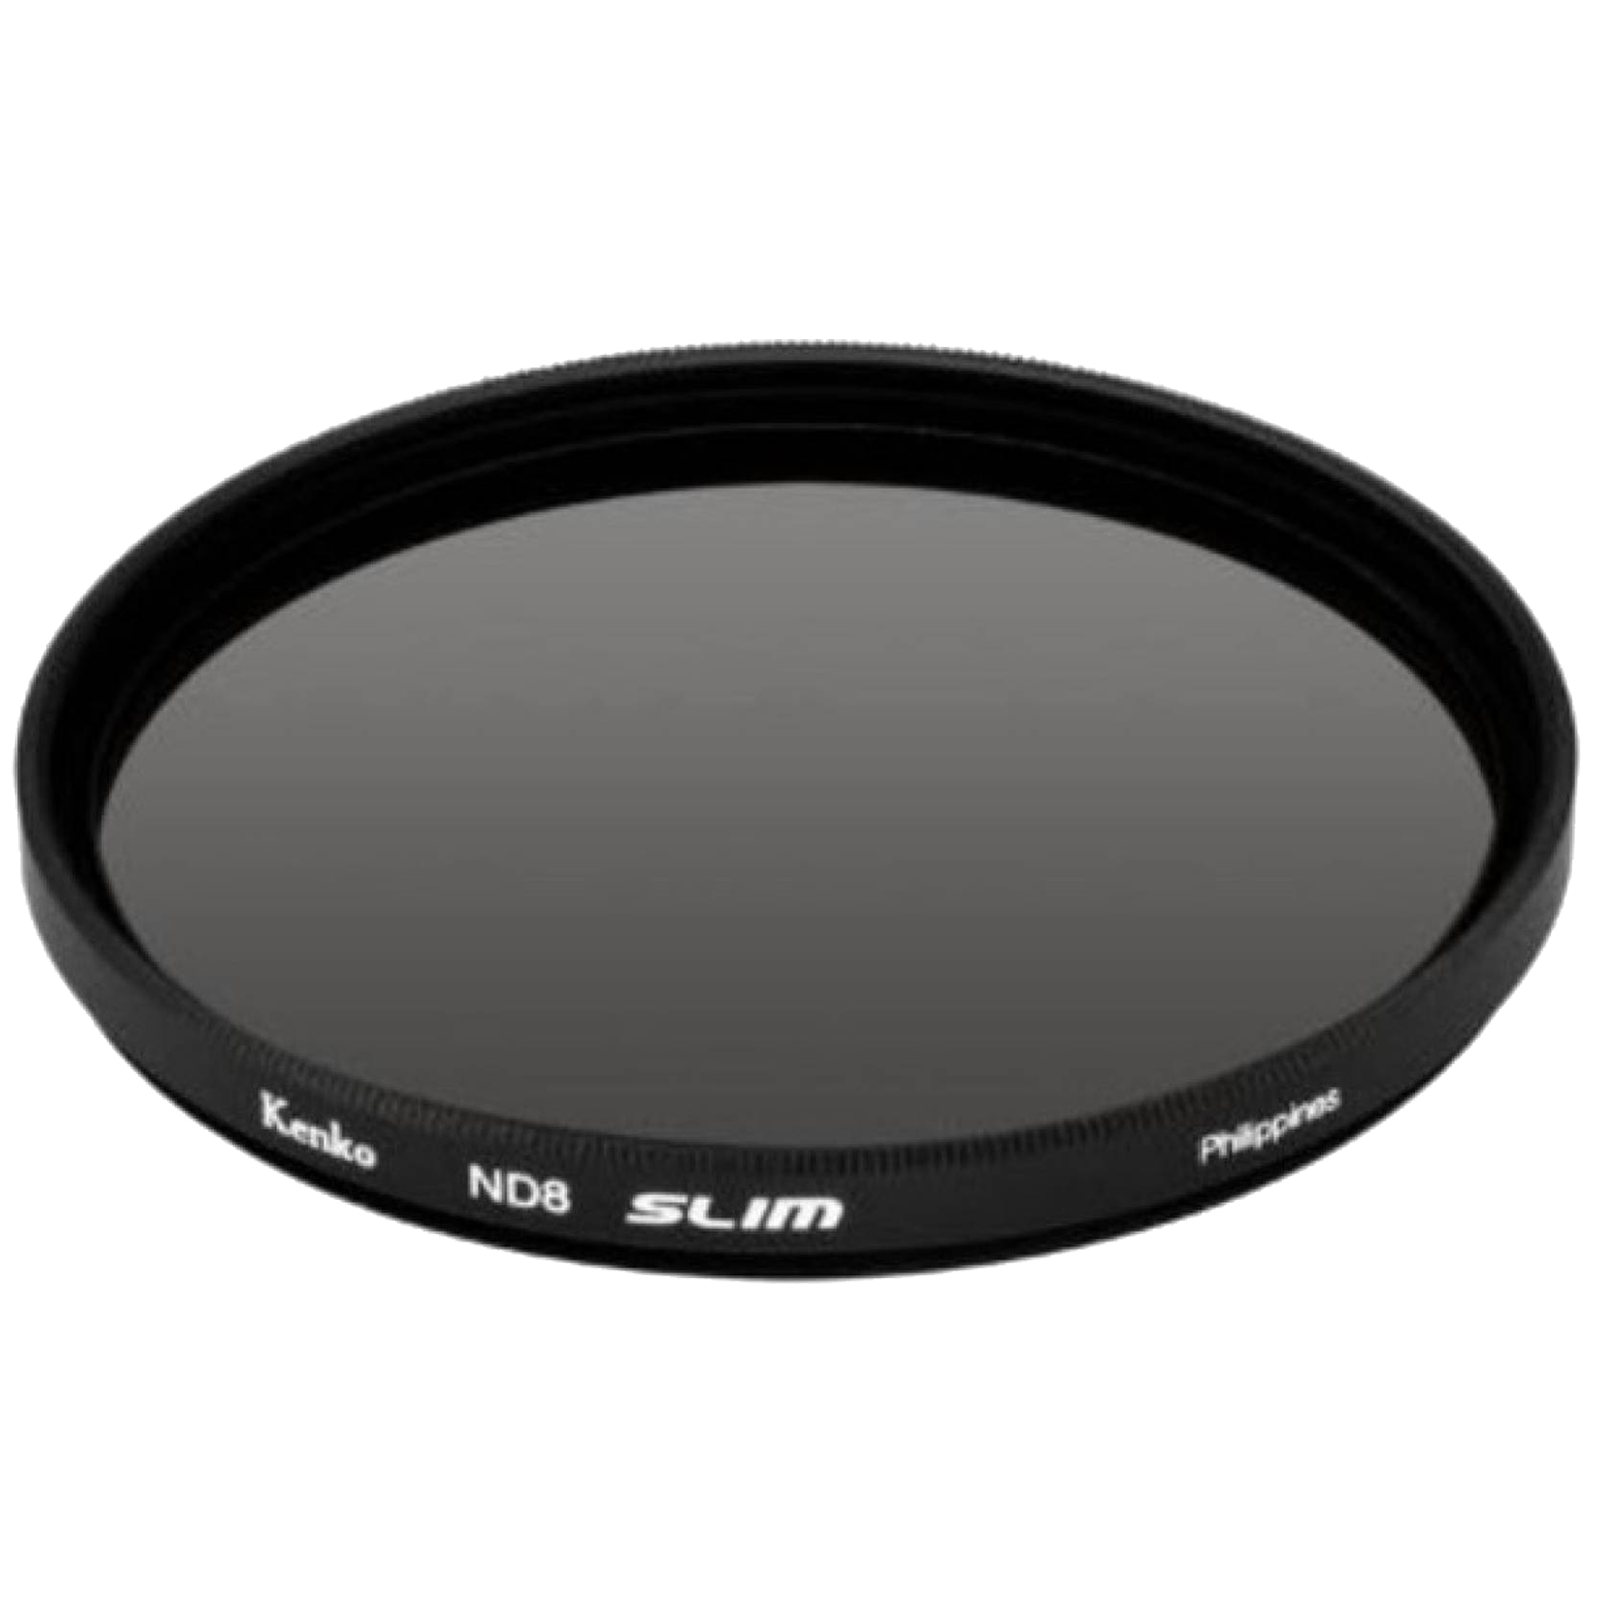 Kenko Smart 40.5mm Lens Filter (8-times Longer Shutter Speed, 224215, Black)_1